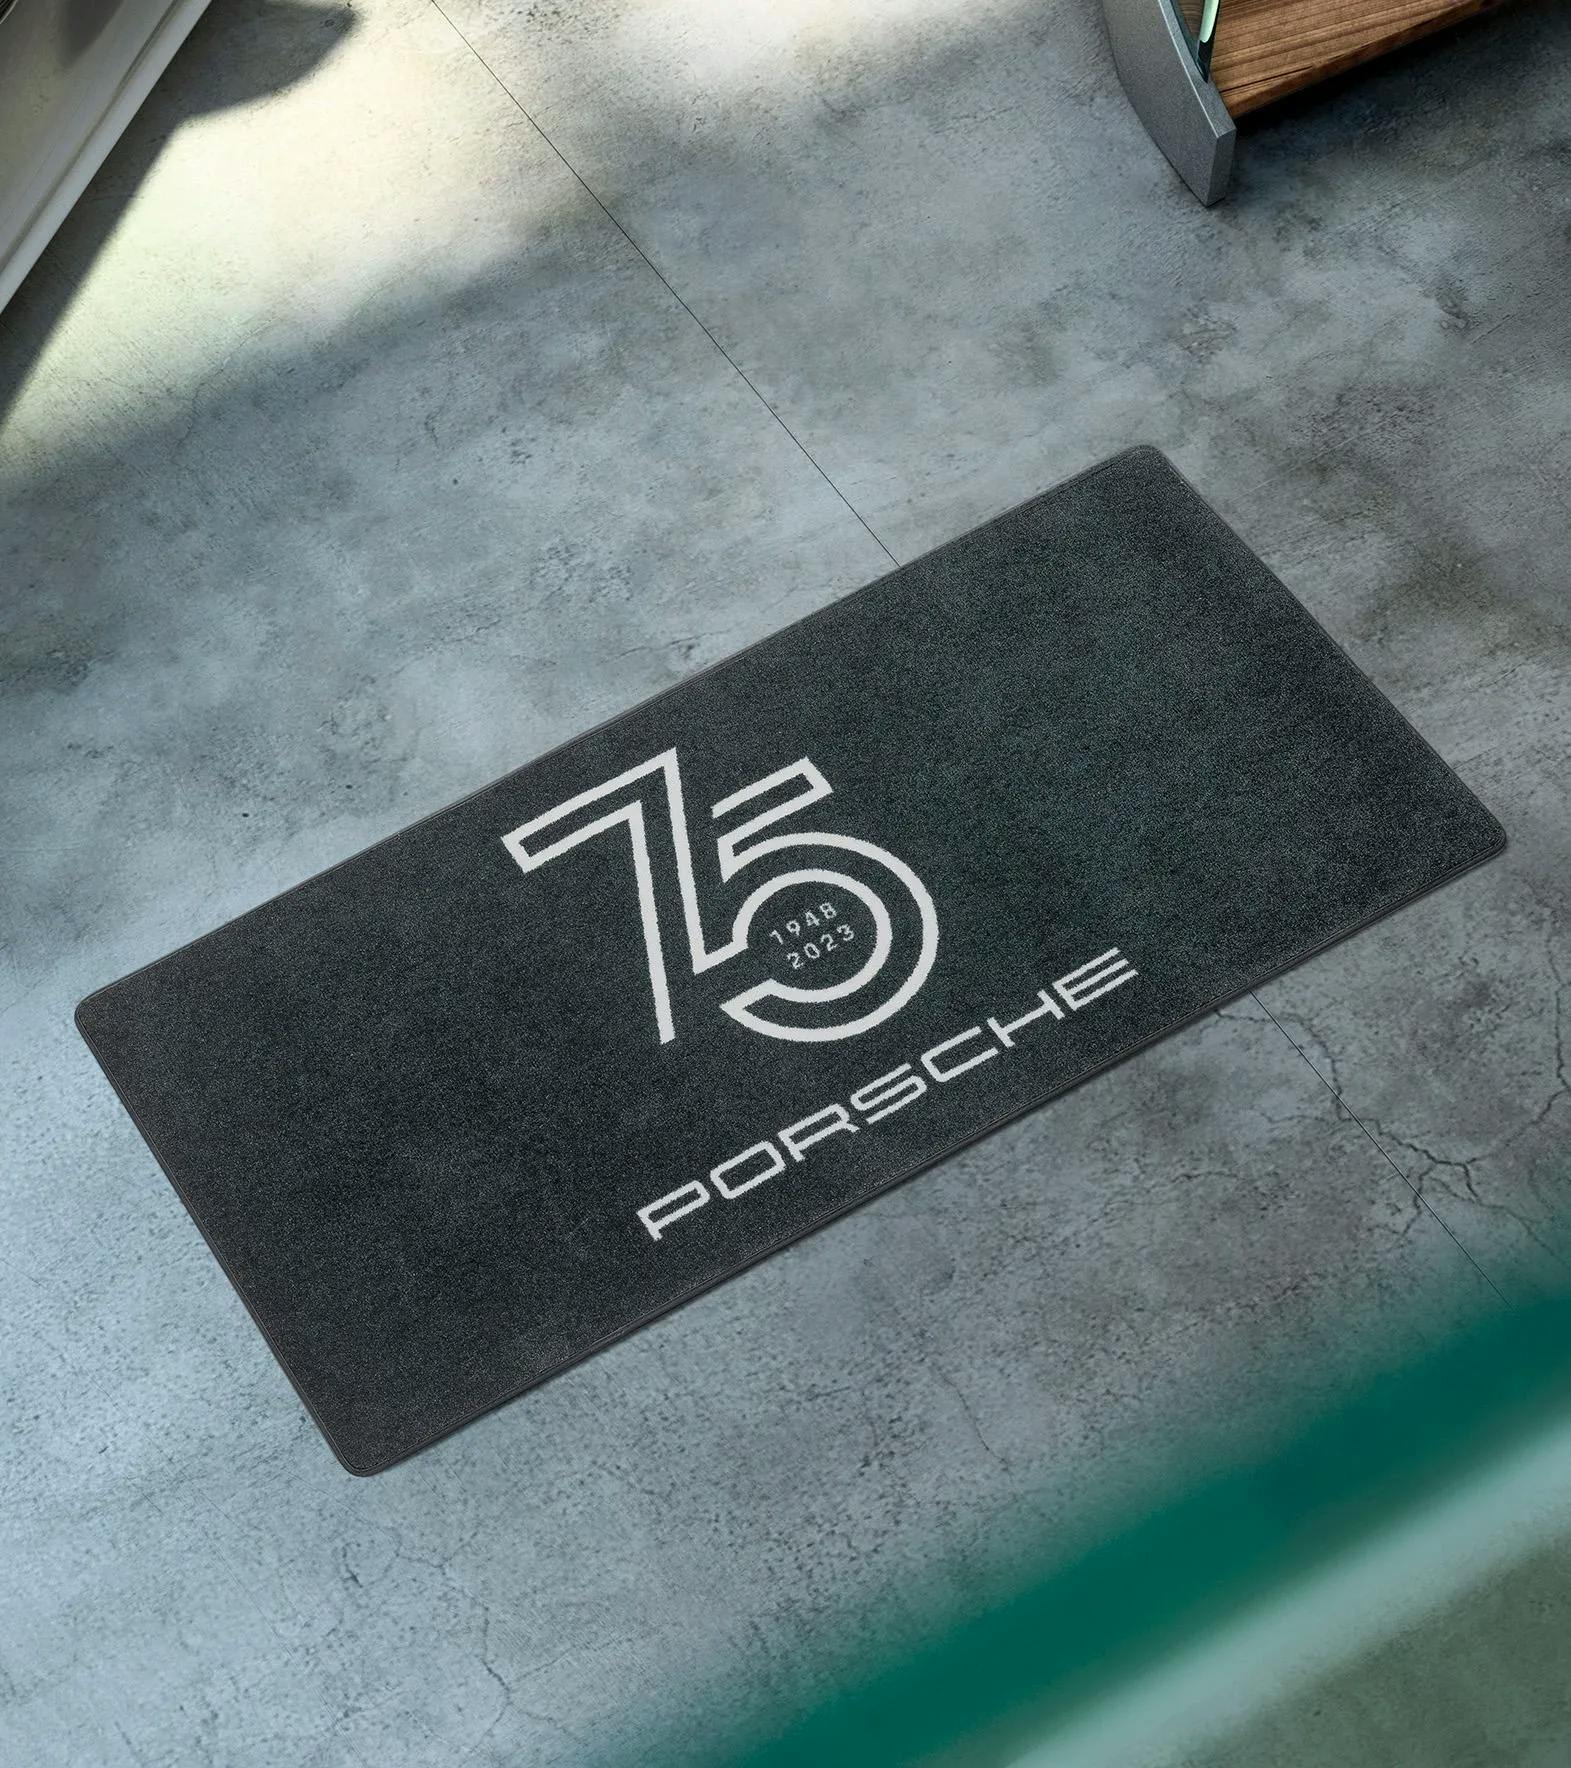 75 éve Porsche garázsszőnyeg 2